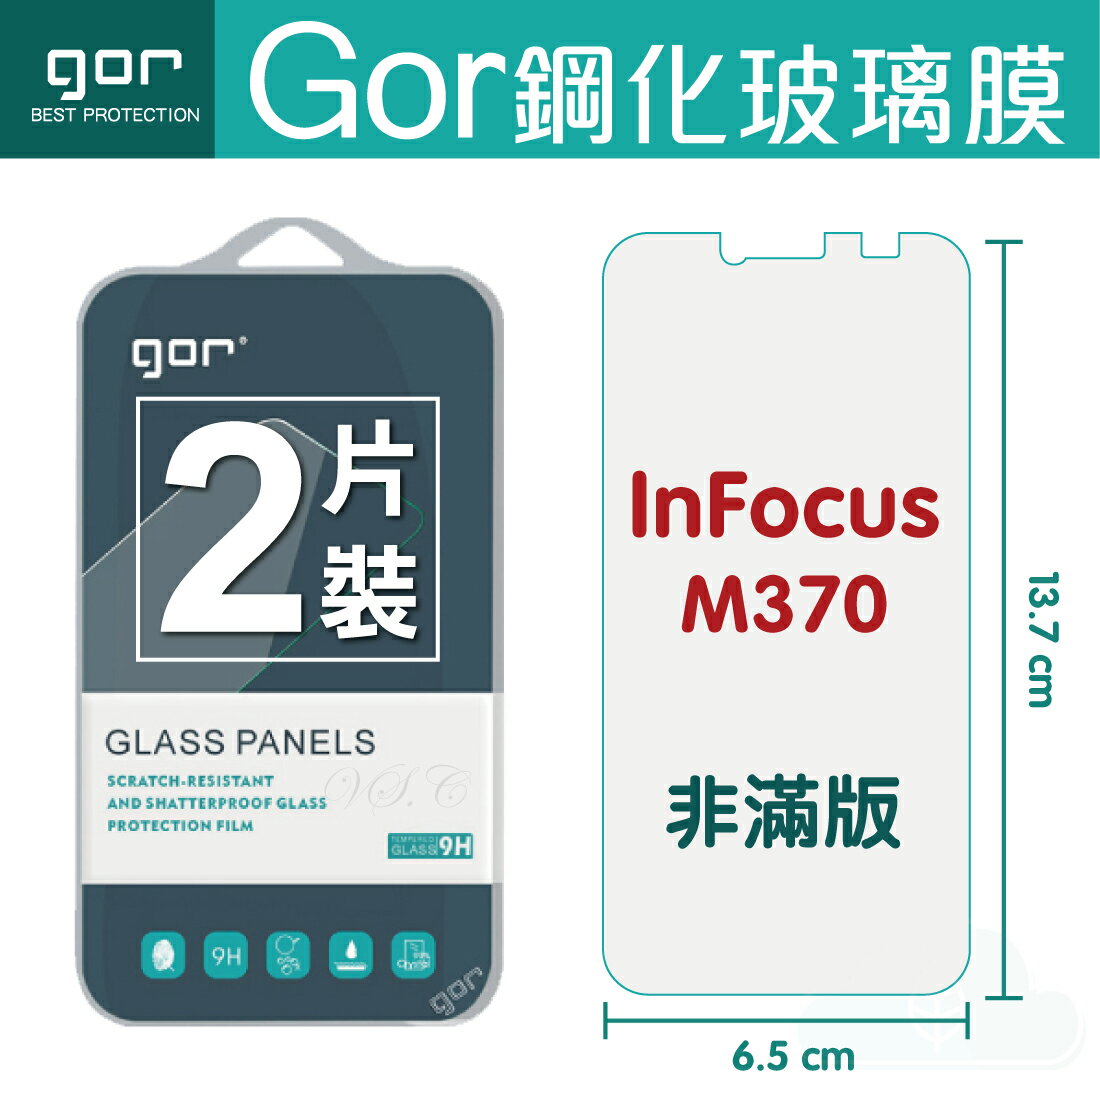 【鴻海/Infocus】GOR 正品 9H M370 玻璃 鋼化 保護貼【全館滿299免運費】